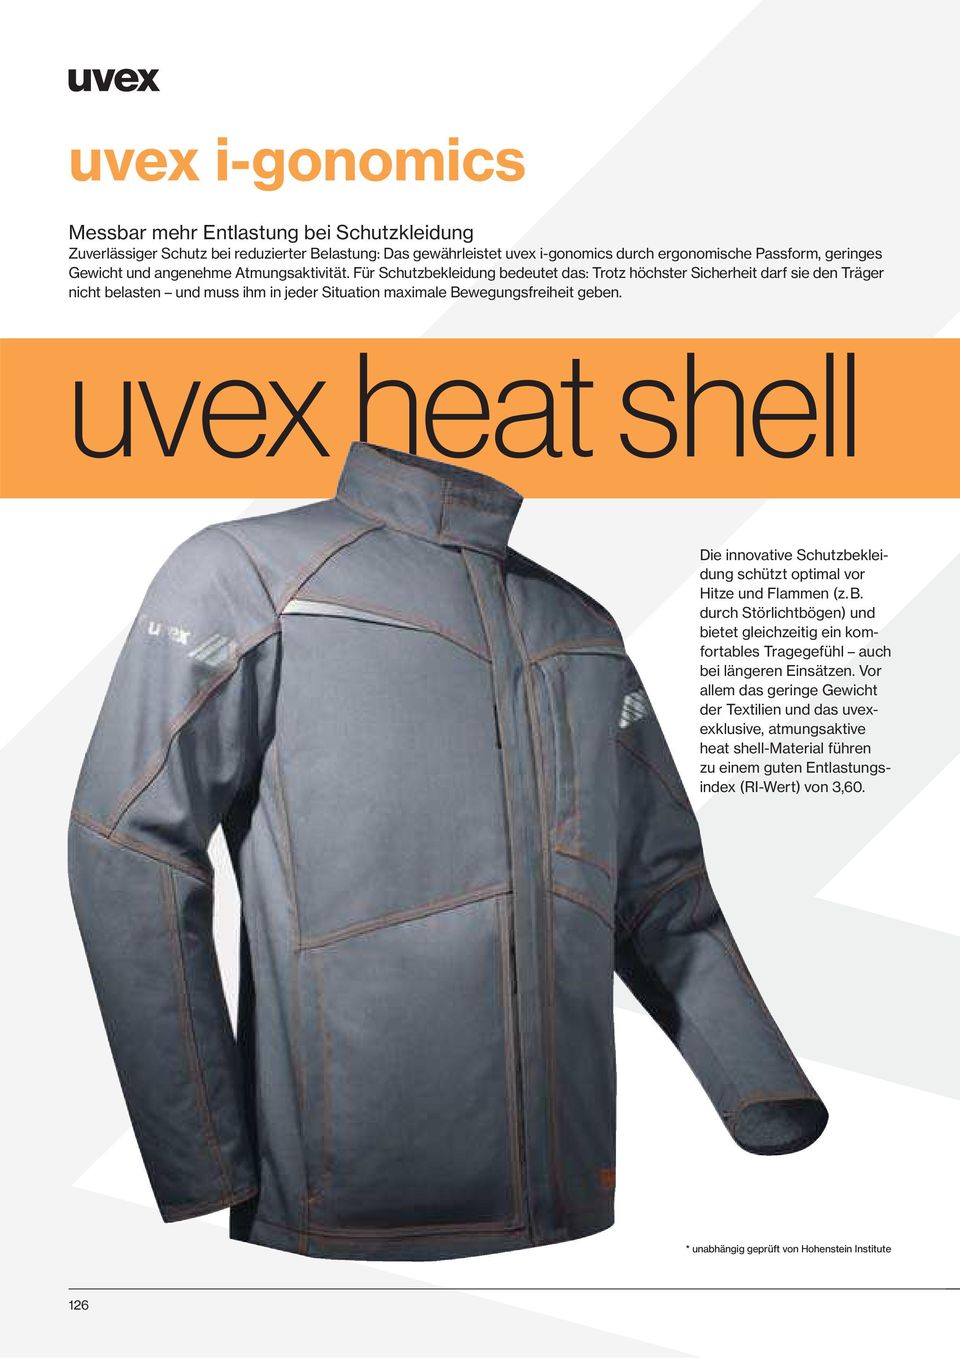 uvex heat shell Die innovative Schutzbekleidung schützt optimal vor Hitze und Flammen (z. B. durch Störlichtbögen) und bietet gleichzeitig ein komfortables Trage gefühl auch bei längeren Einsätzen.